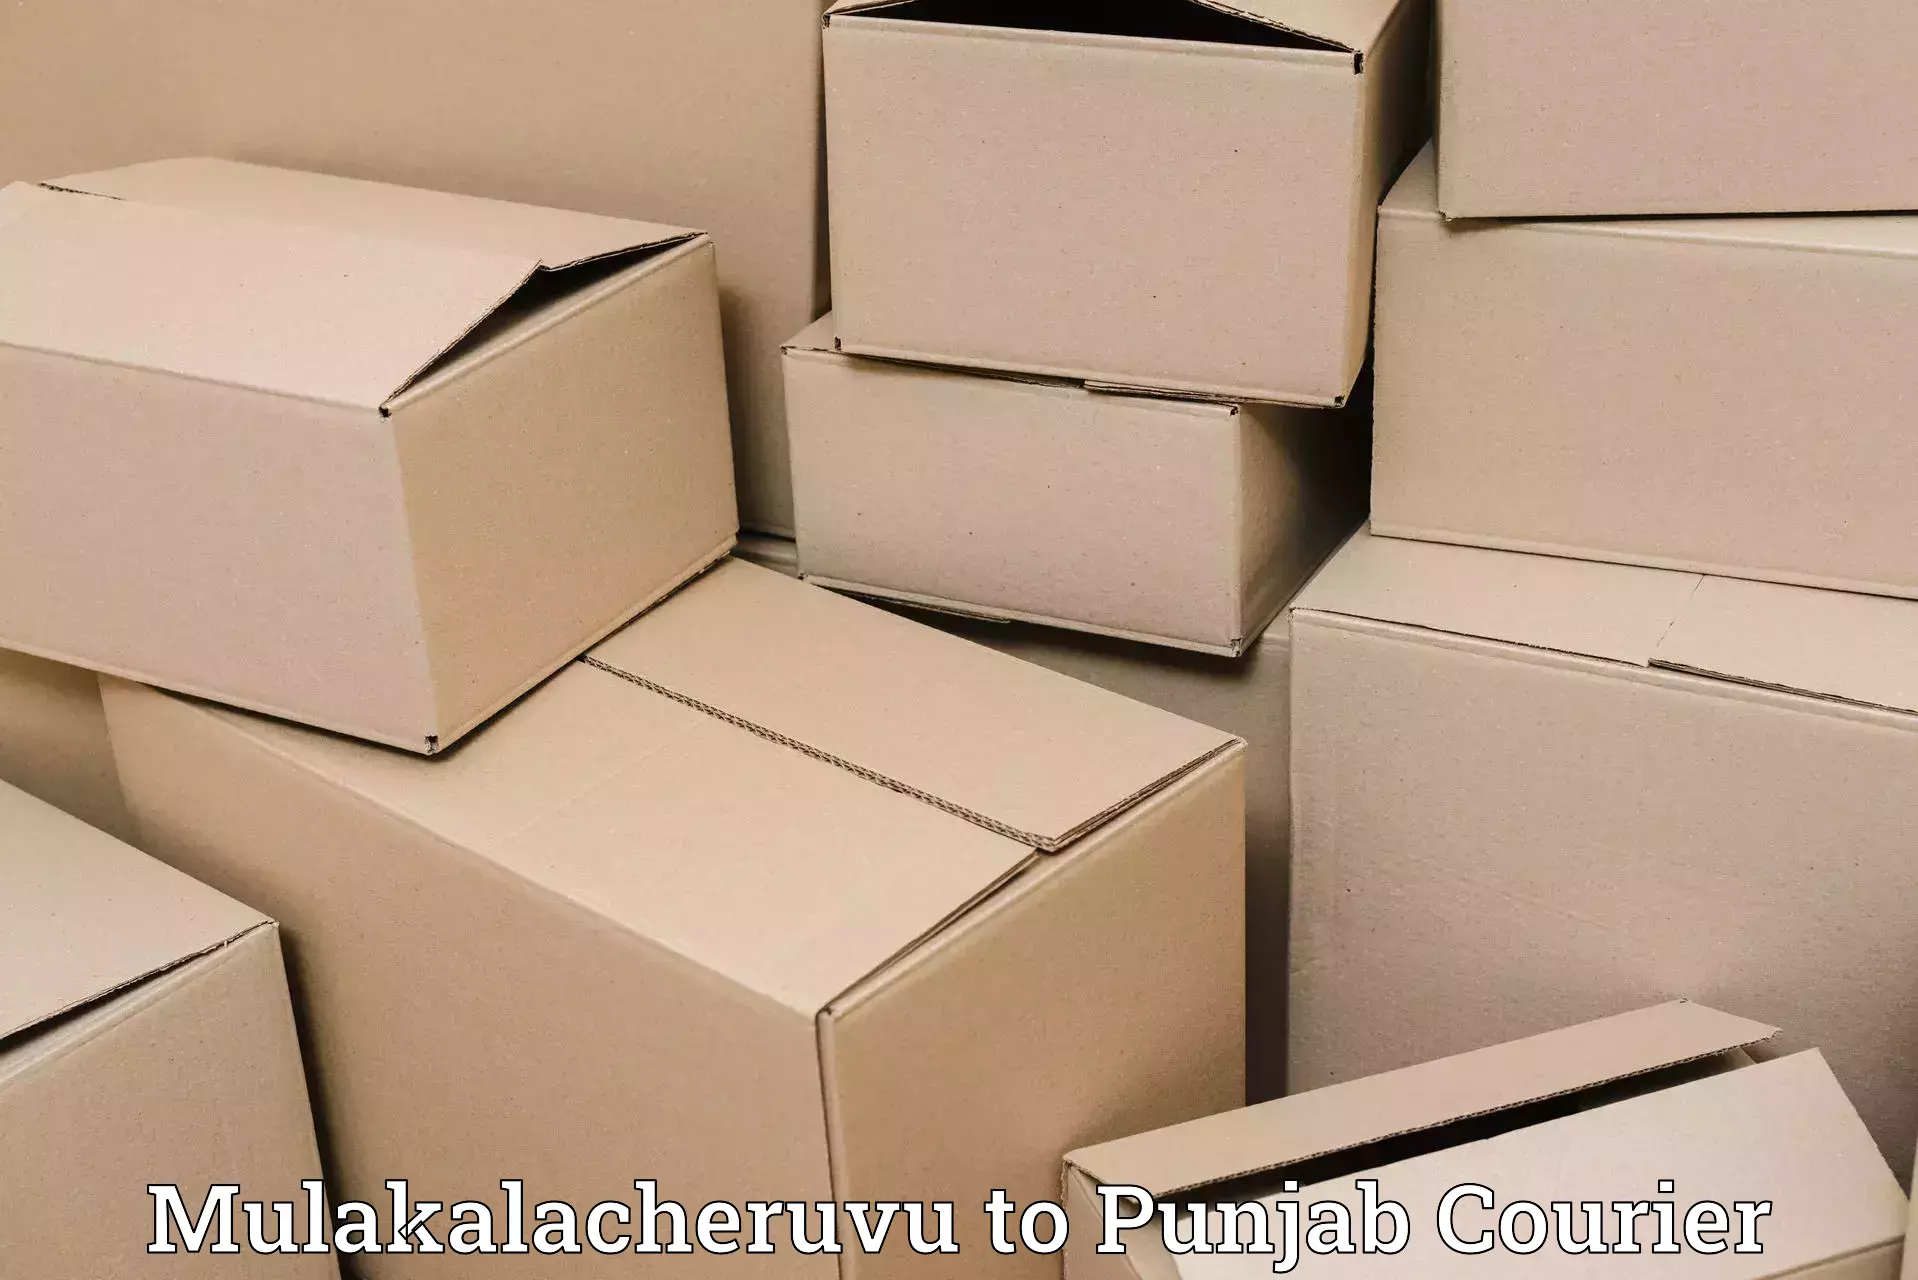 Efficient logistics management Mulakalacheruvu to Nakodar